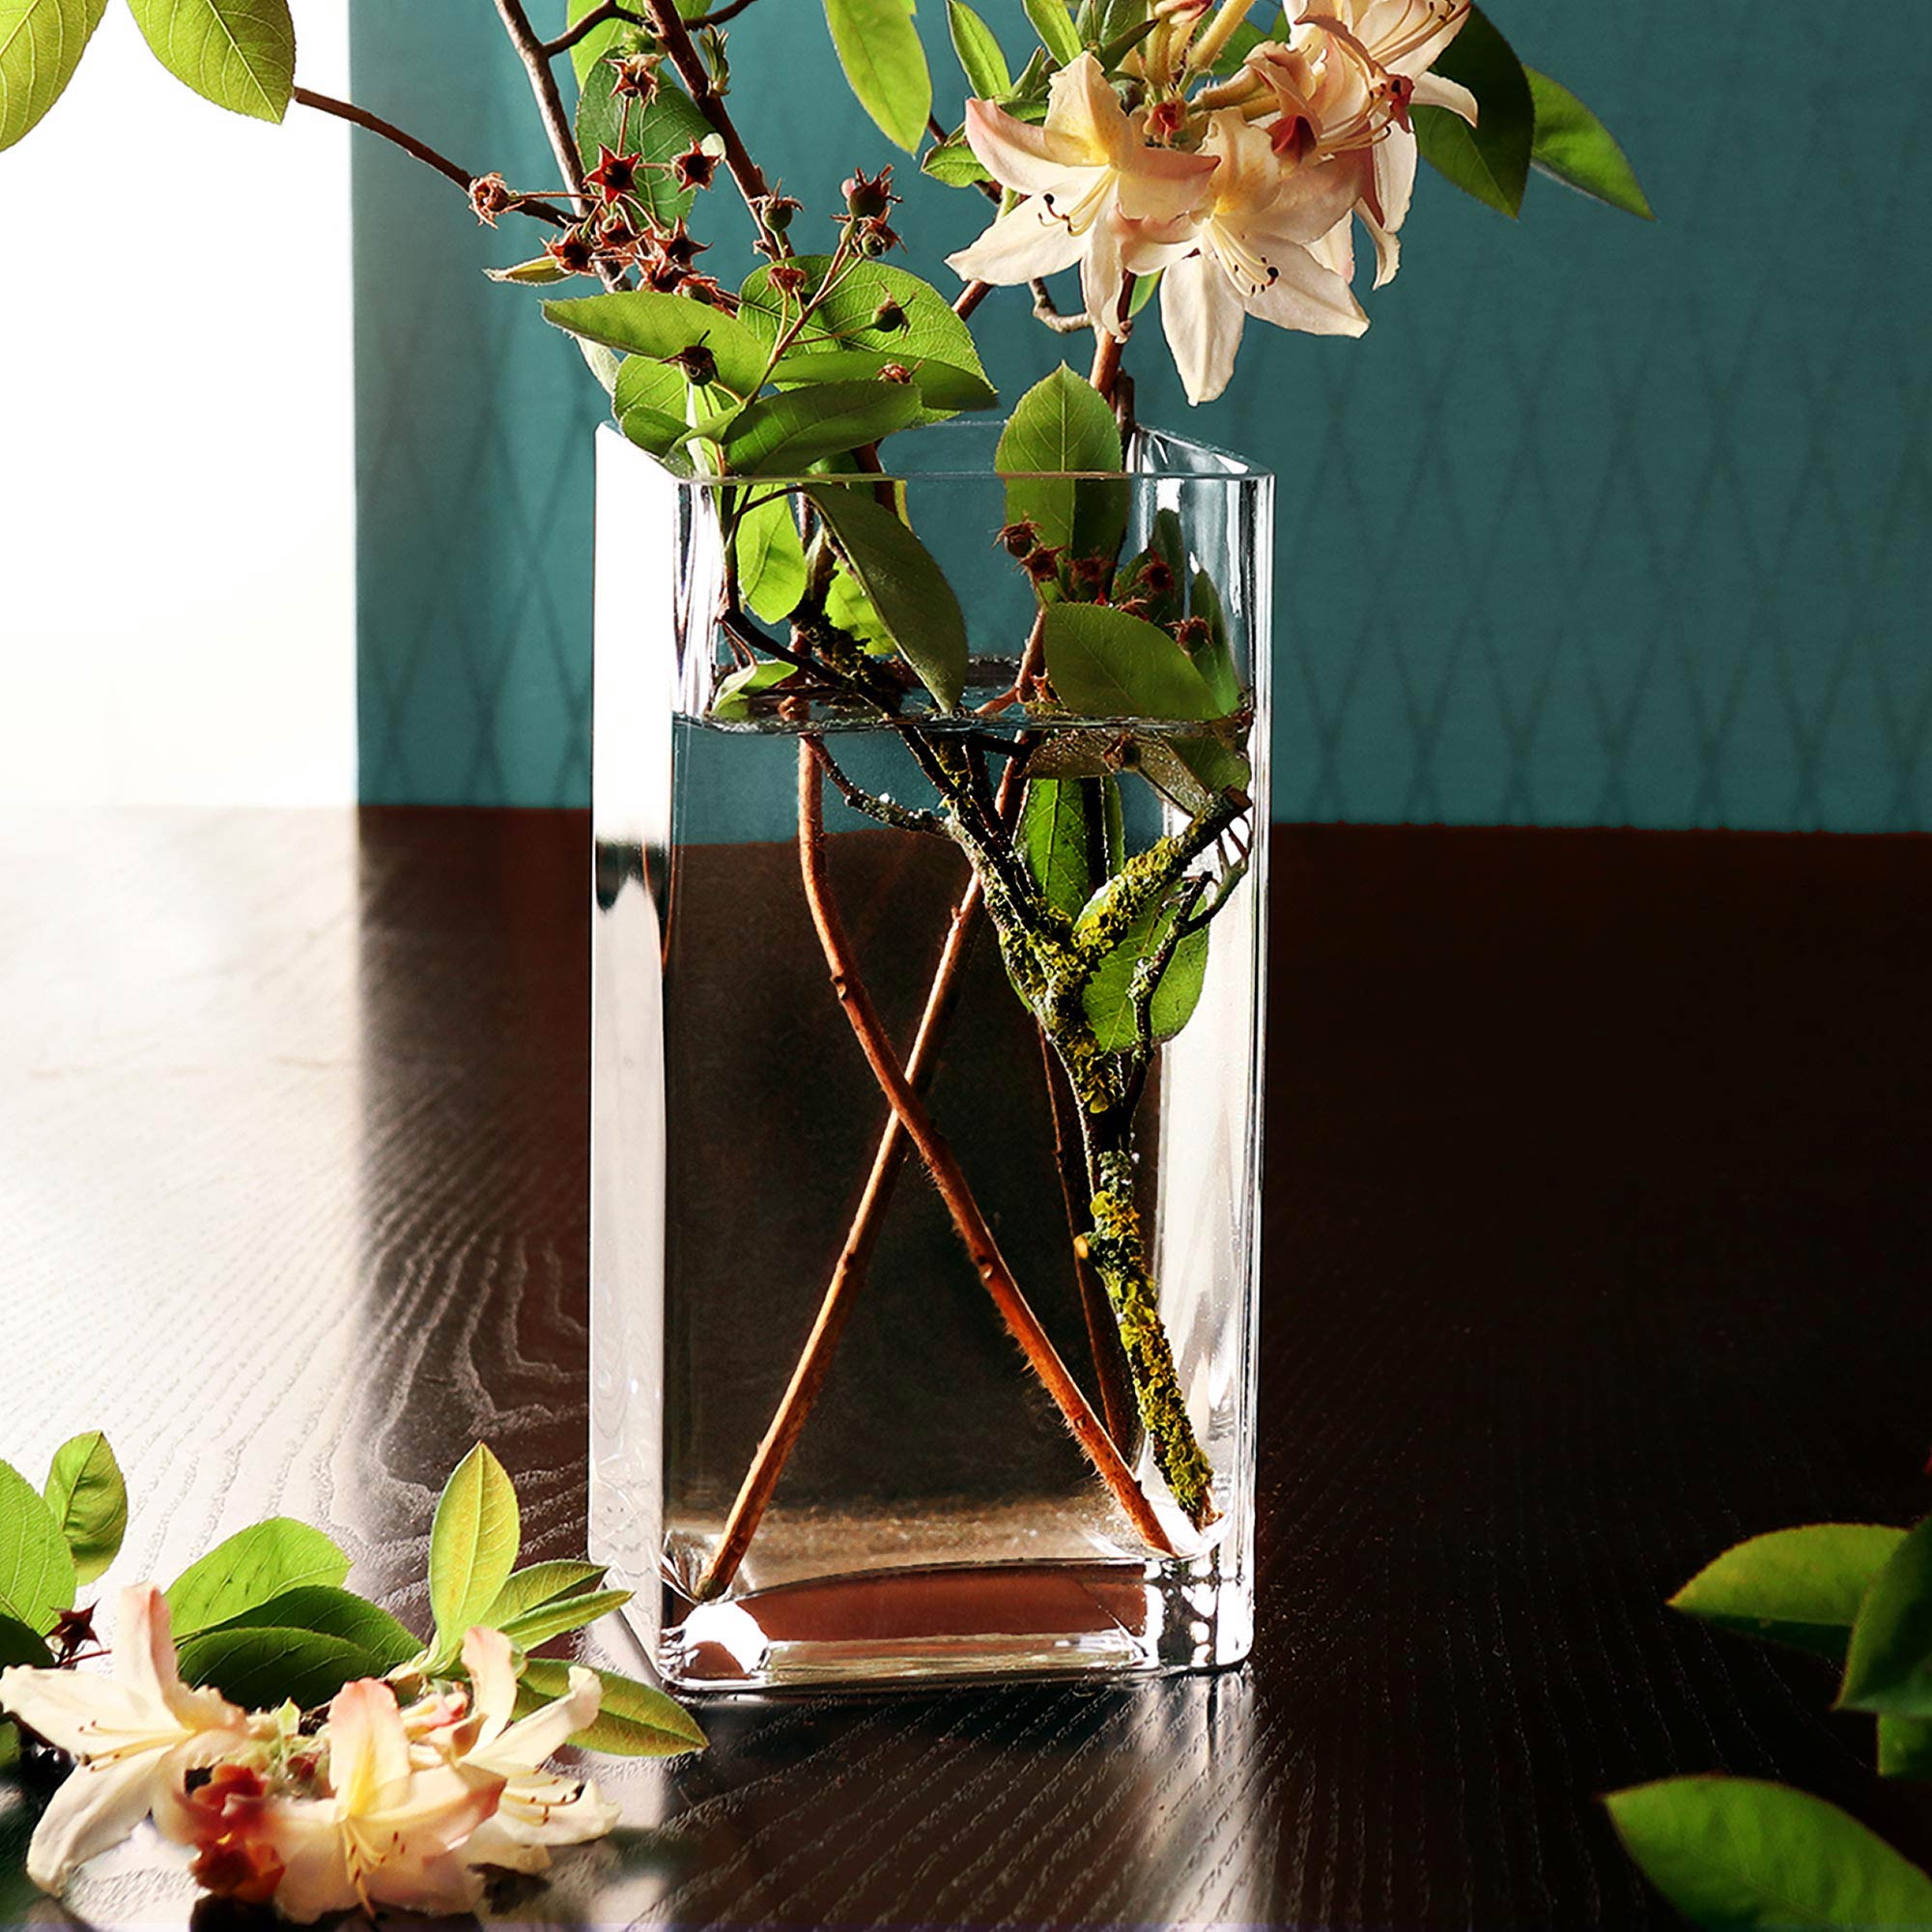 Eckige Vase - Glas Blumenvase